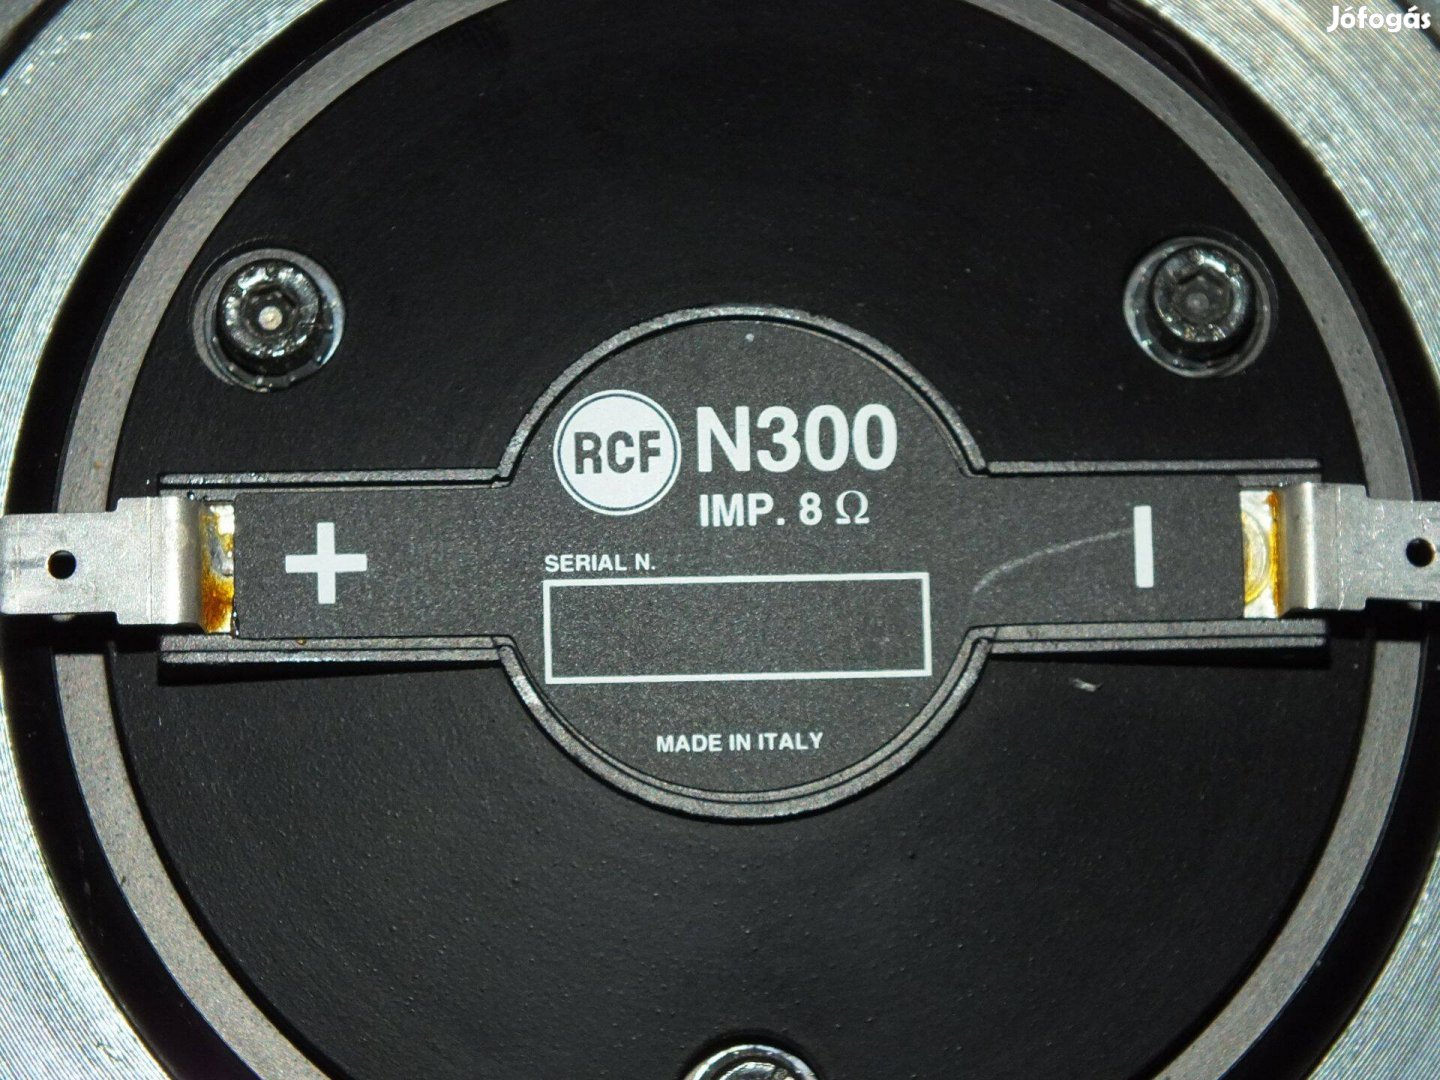 Rcf N 300 compression driver magas hangszóró